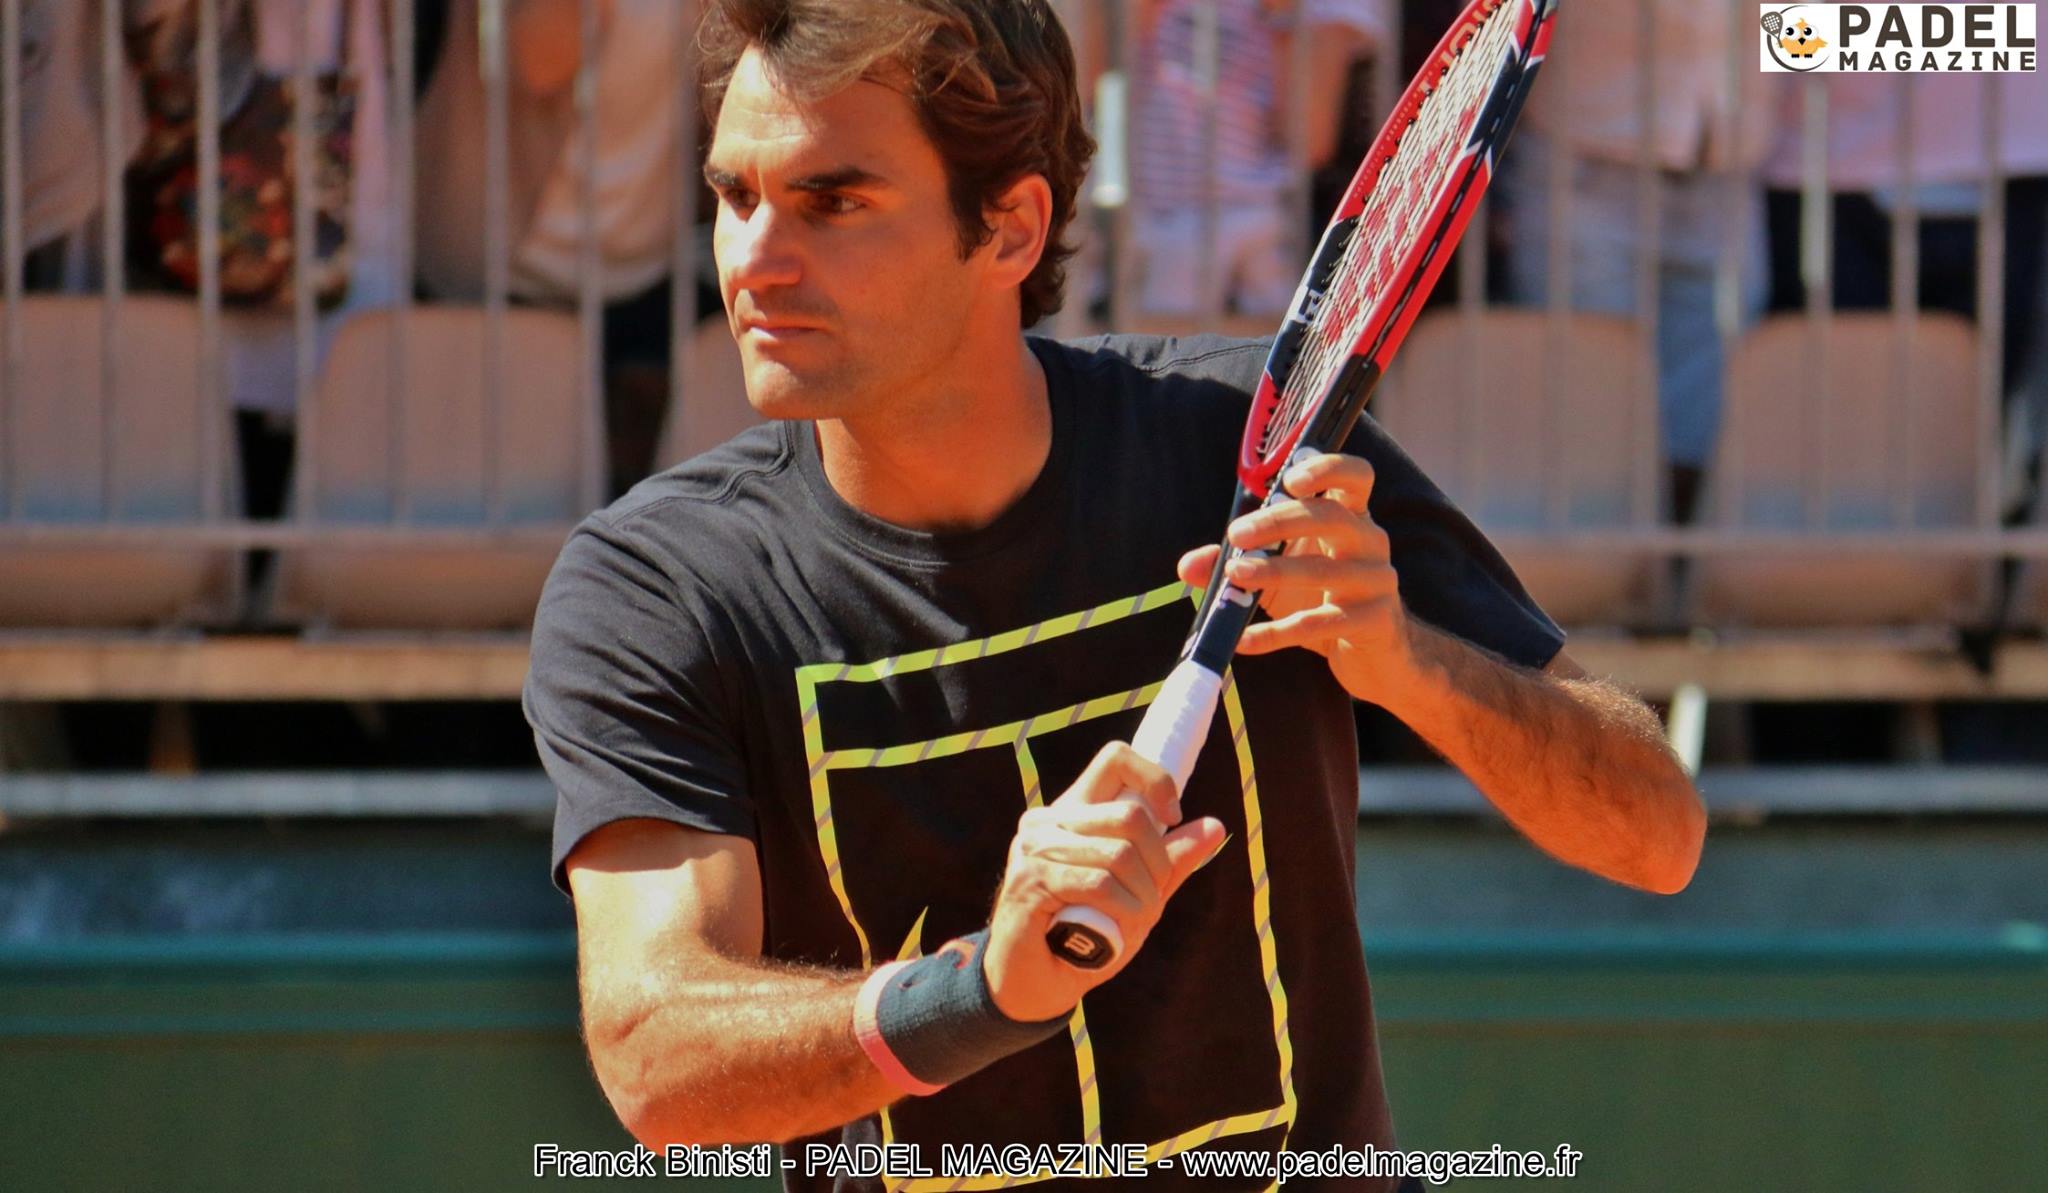 Roger Federer ein zukünftiger großer du padel ?